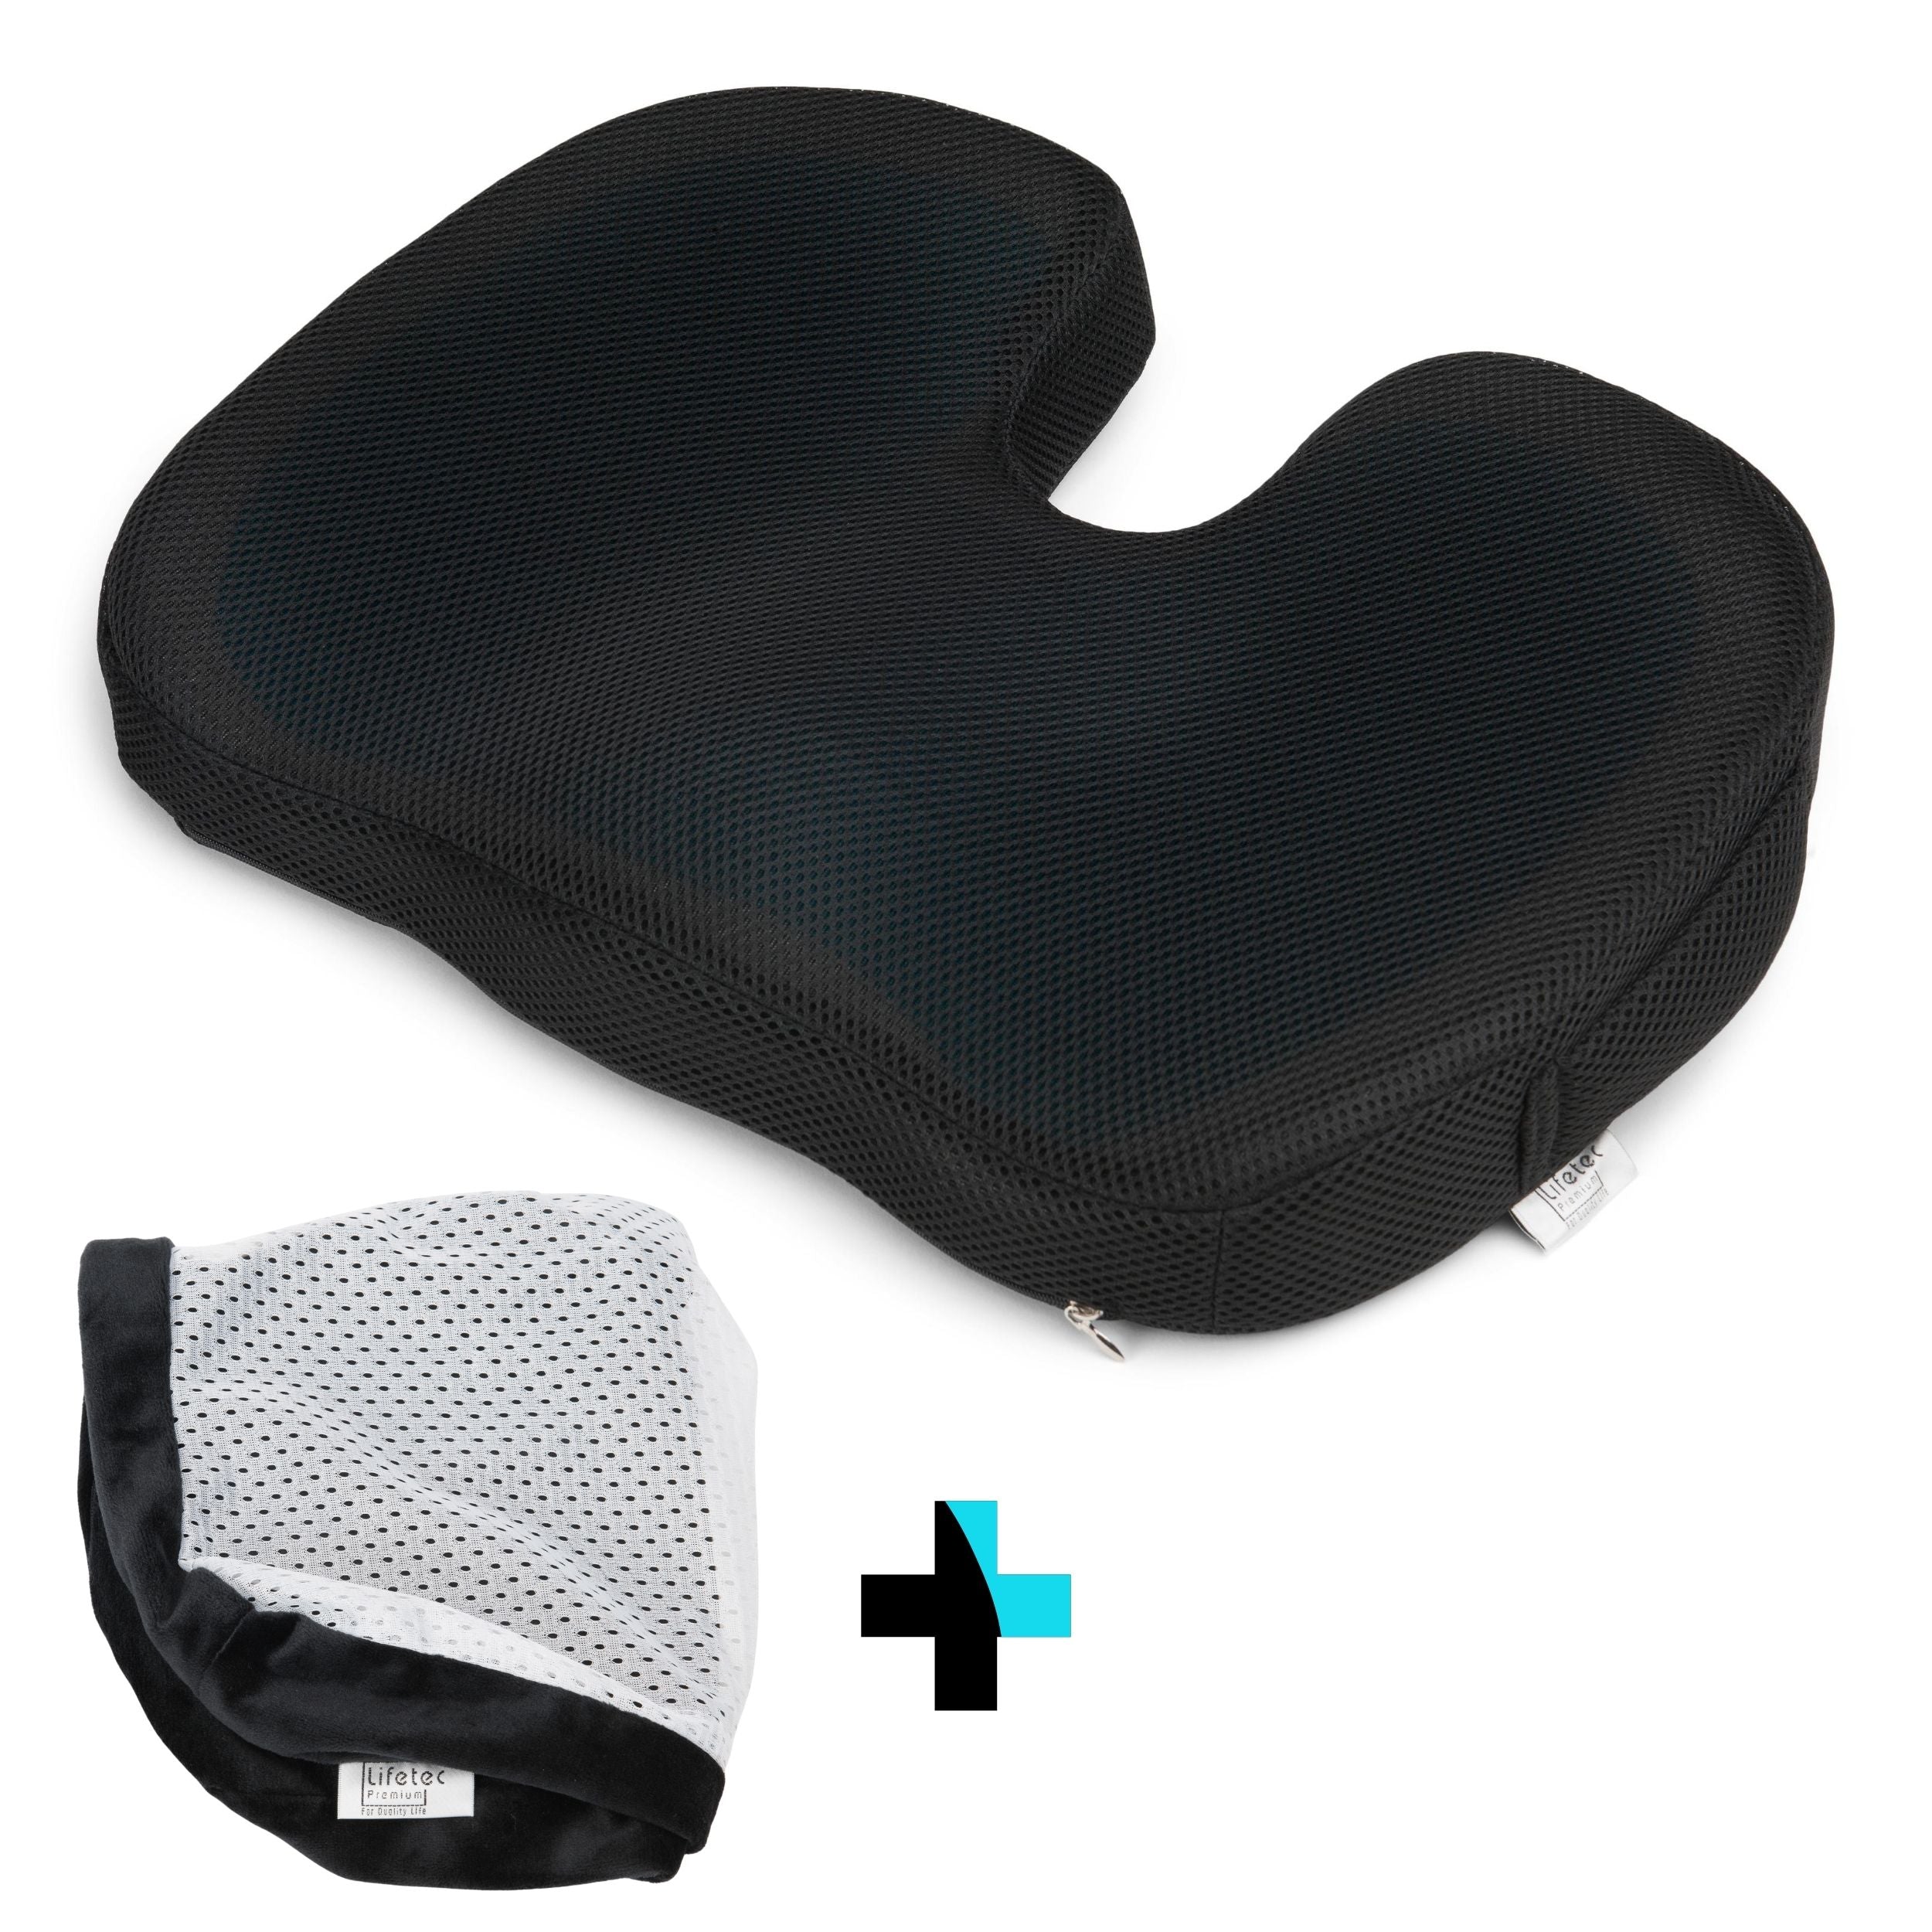 Veraangenamen Attent map Pro Cool Seat™ - Orthopedisch Traagschuim Stuitkussen – Lifetec Premium